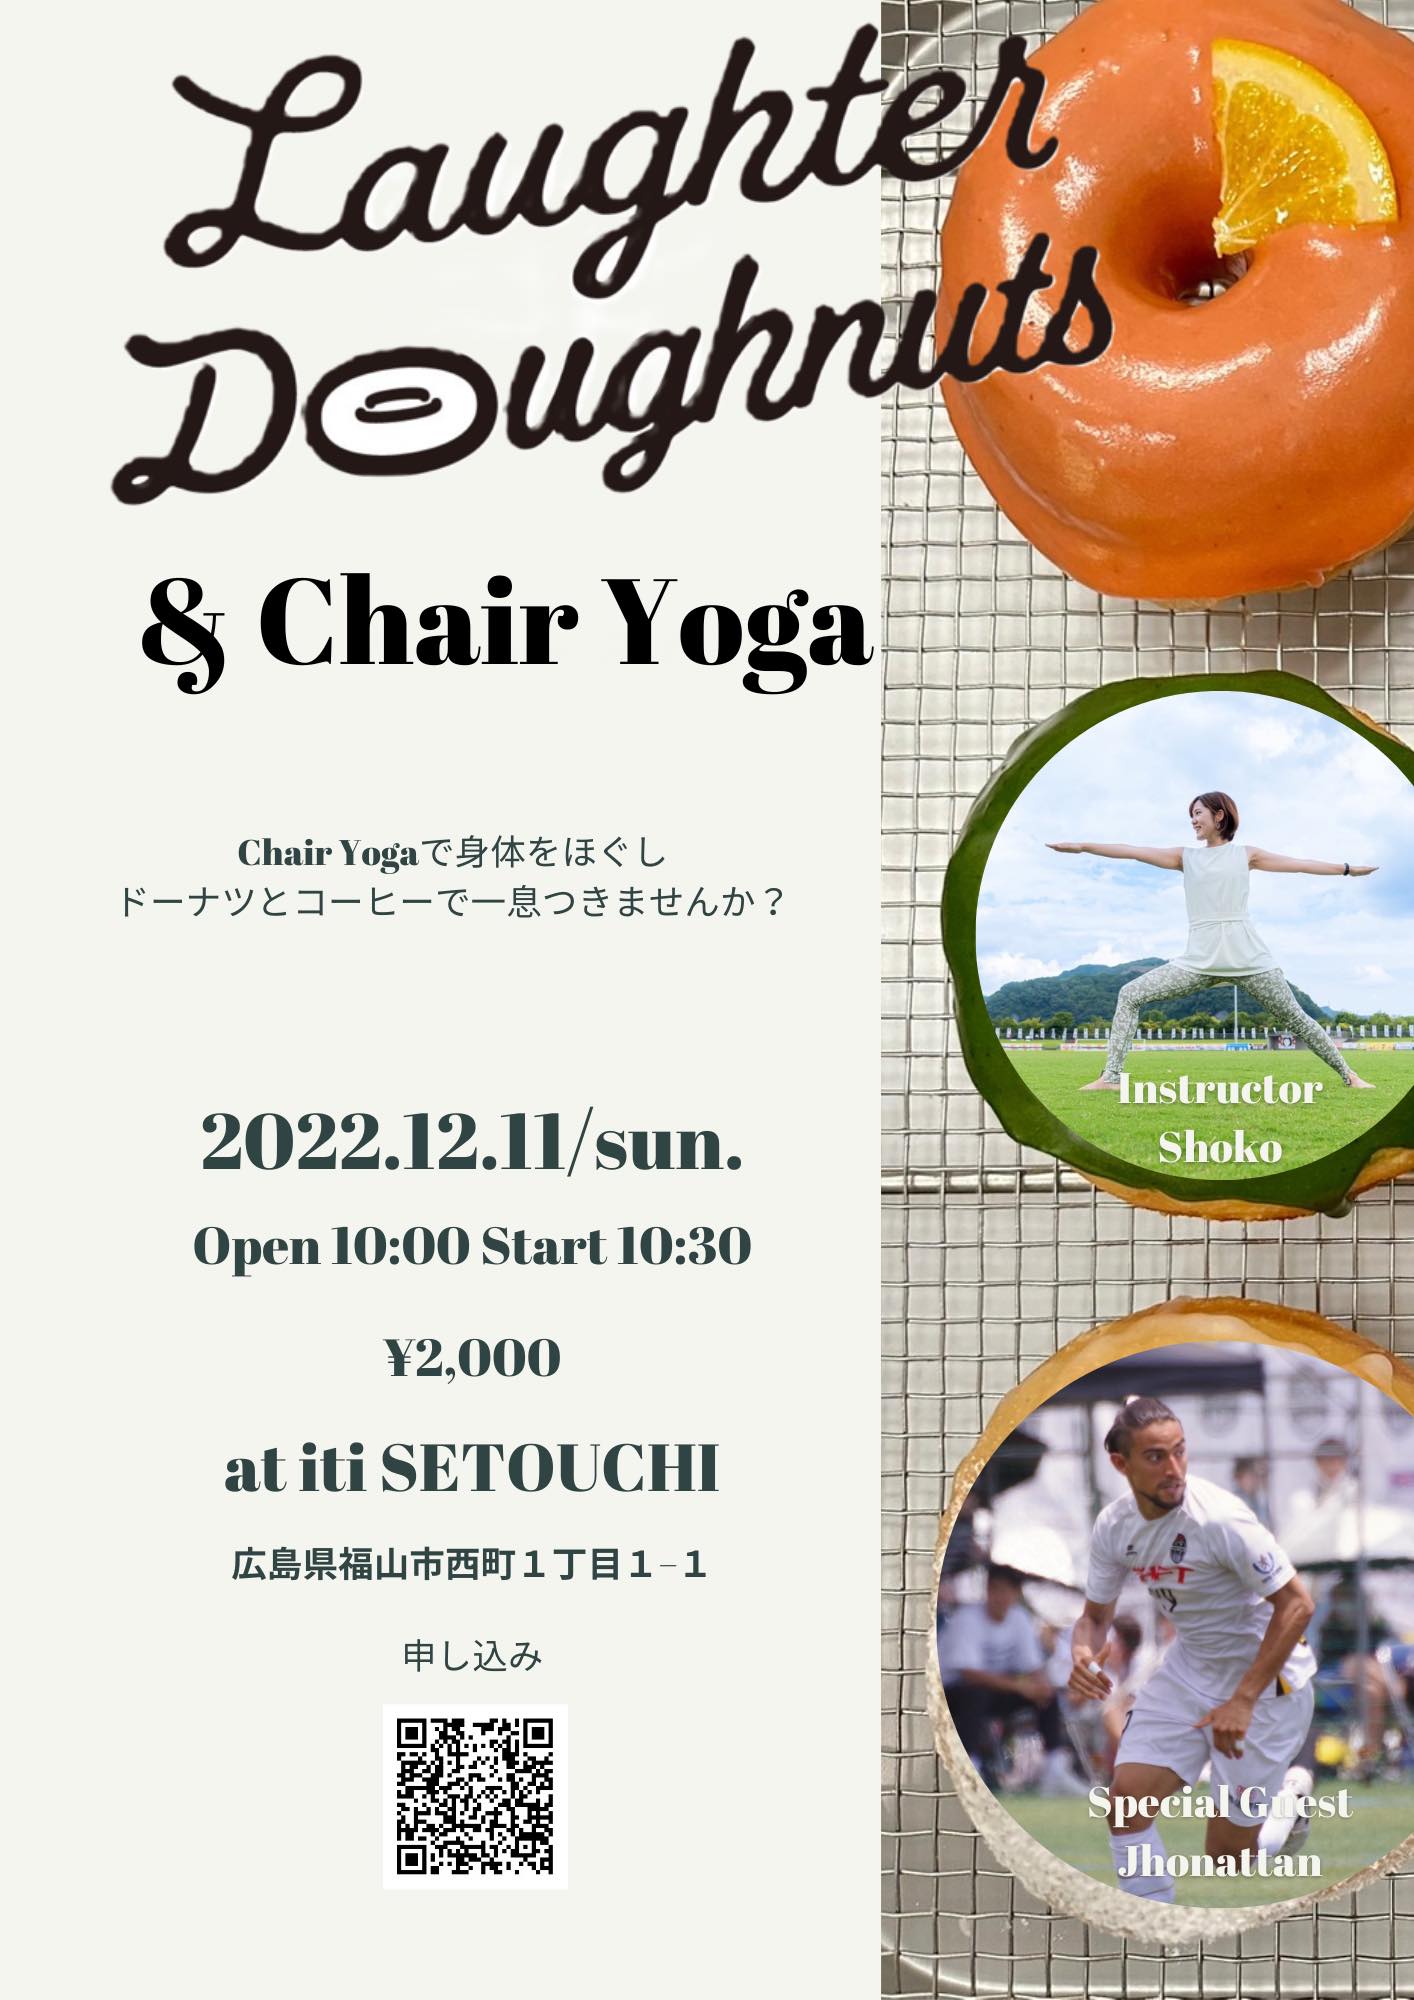 ヨガイベント「Laughter Doughnuts & Chair Yoga」